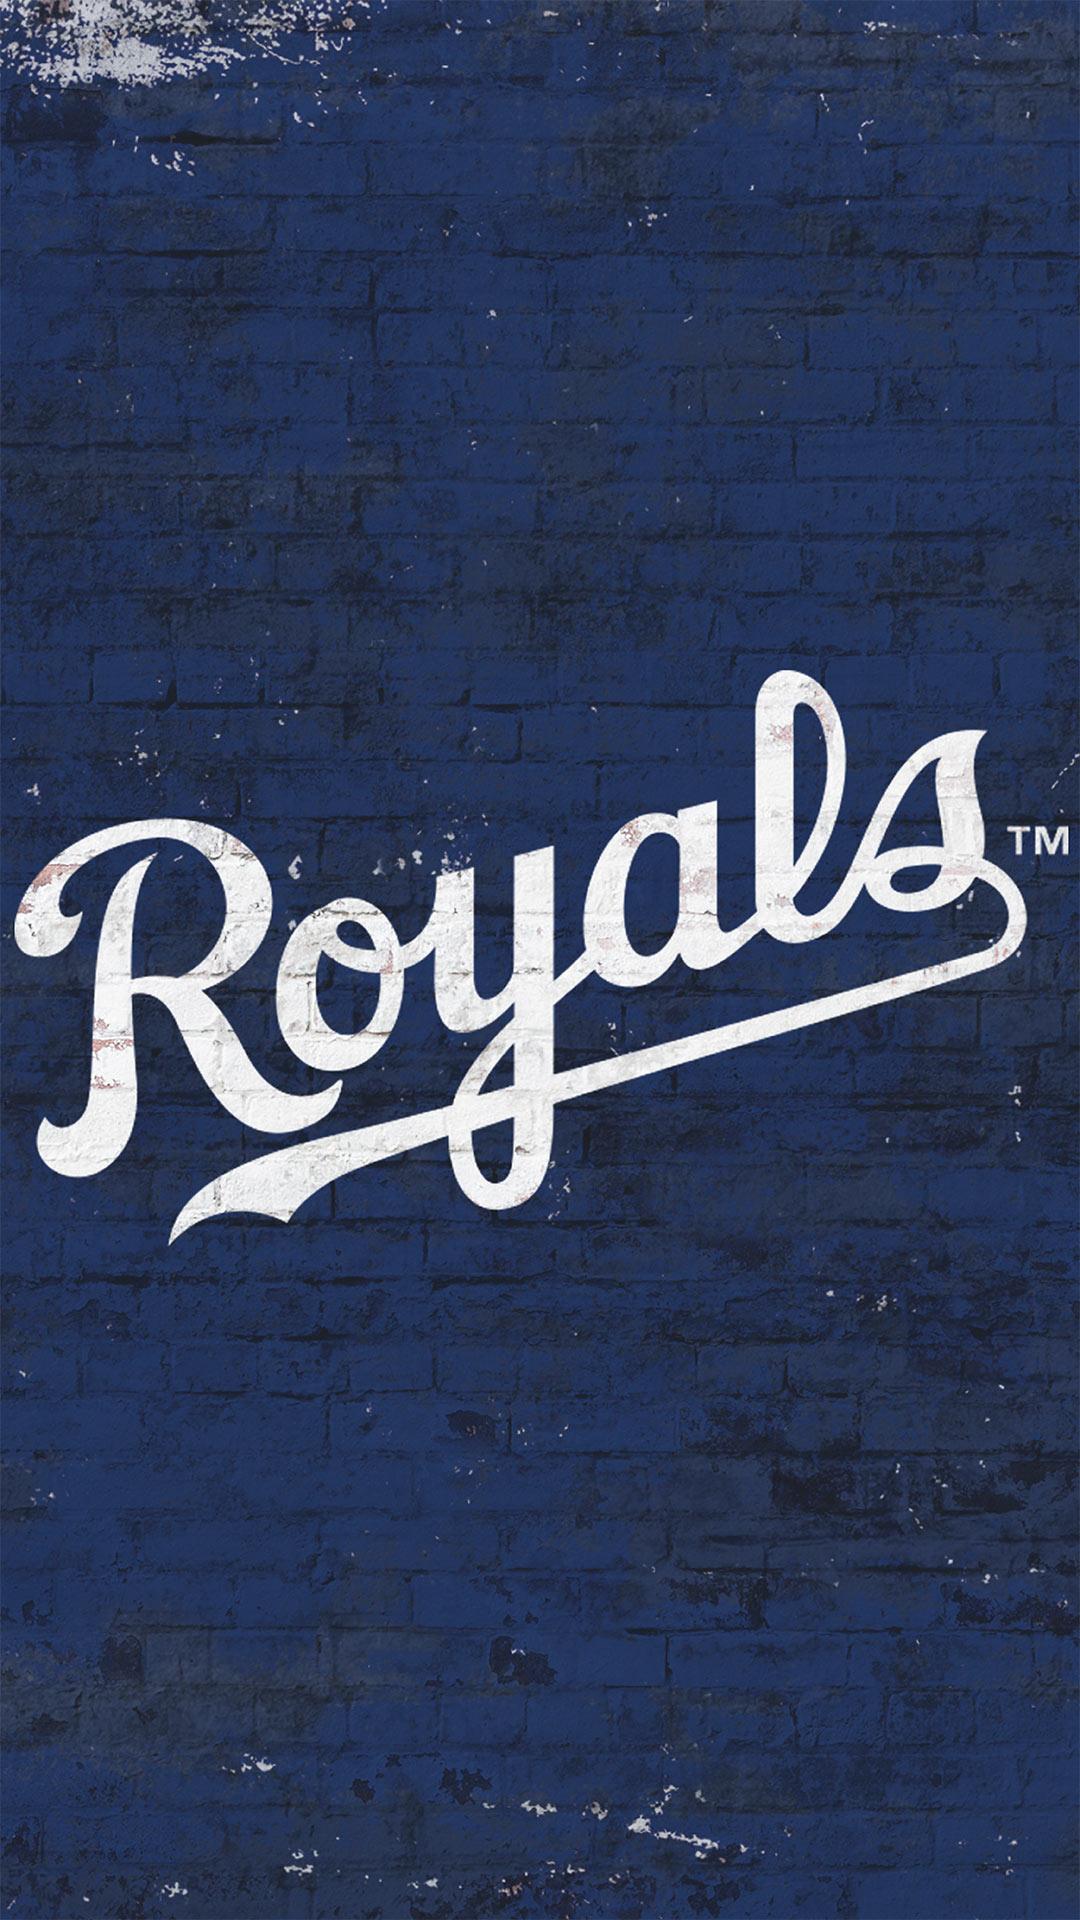 45+] Royals World Series Wallpaper - WallpaperSafari